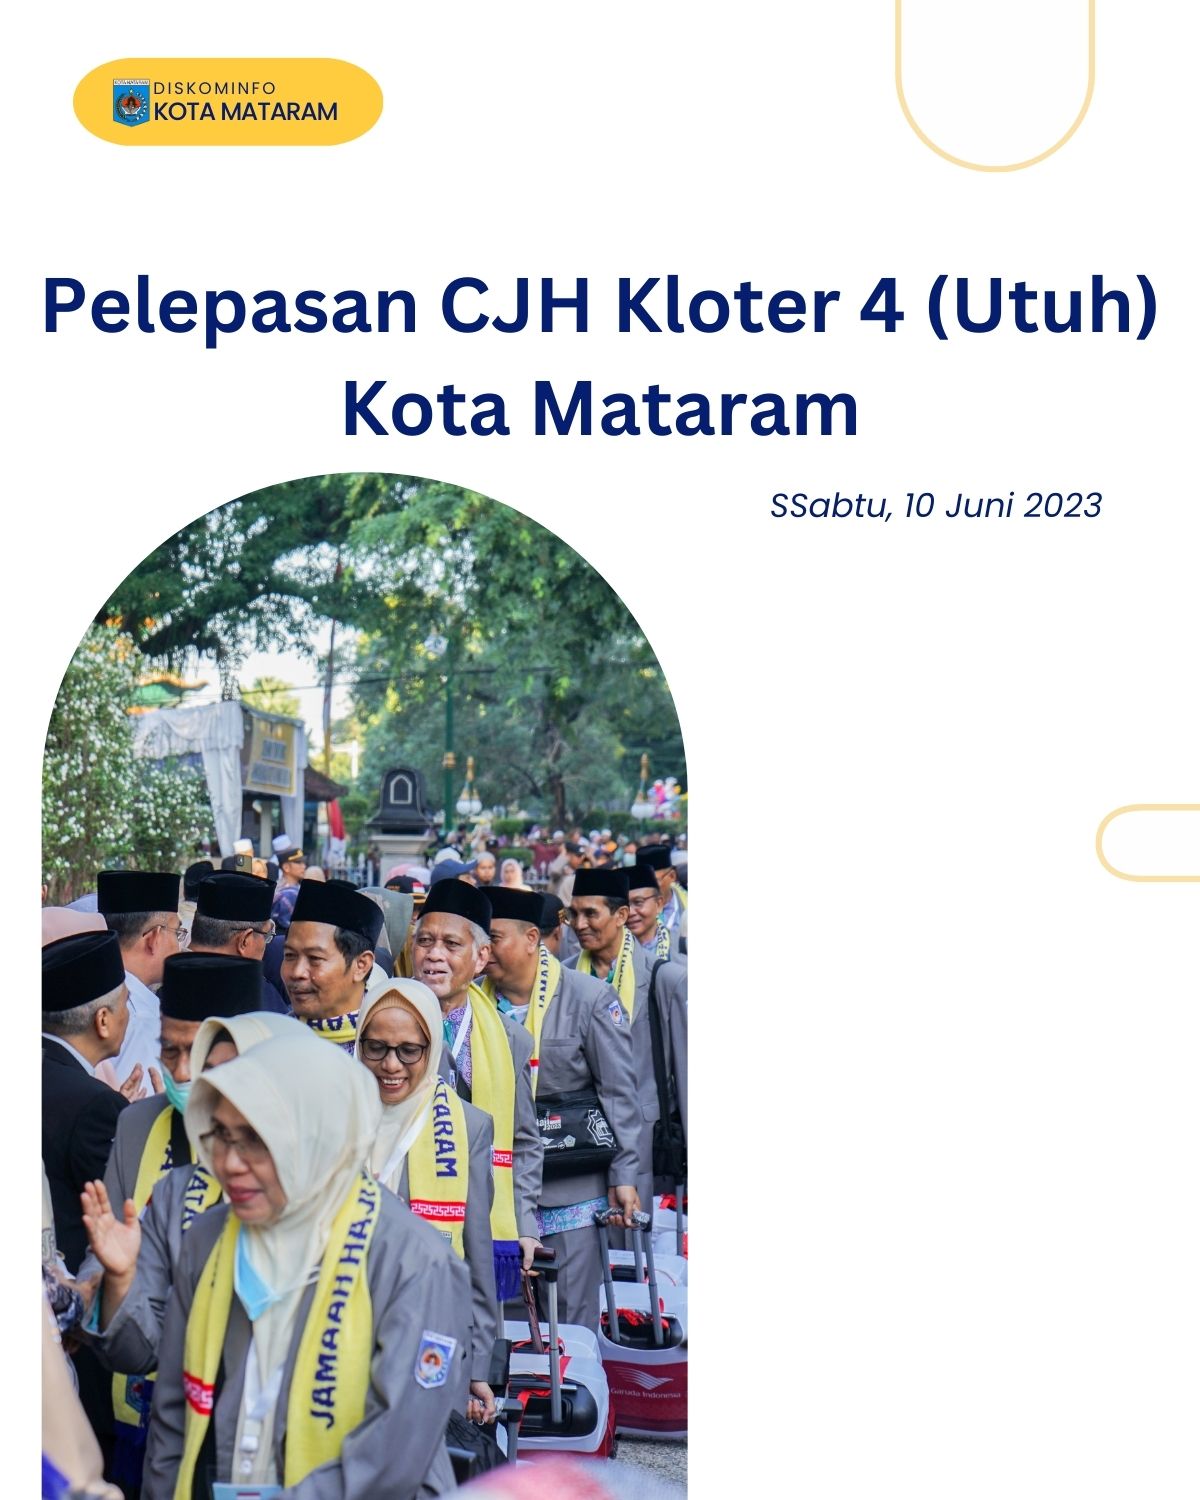 Pelepasan CJH Kloter 4 (Utuh) Kota Mataram